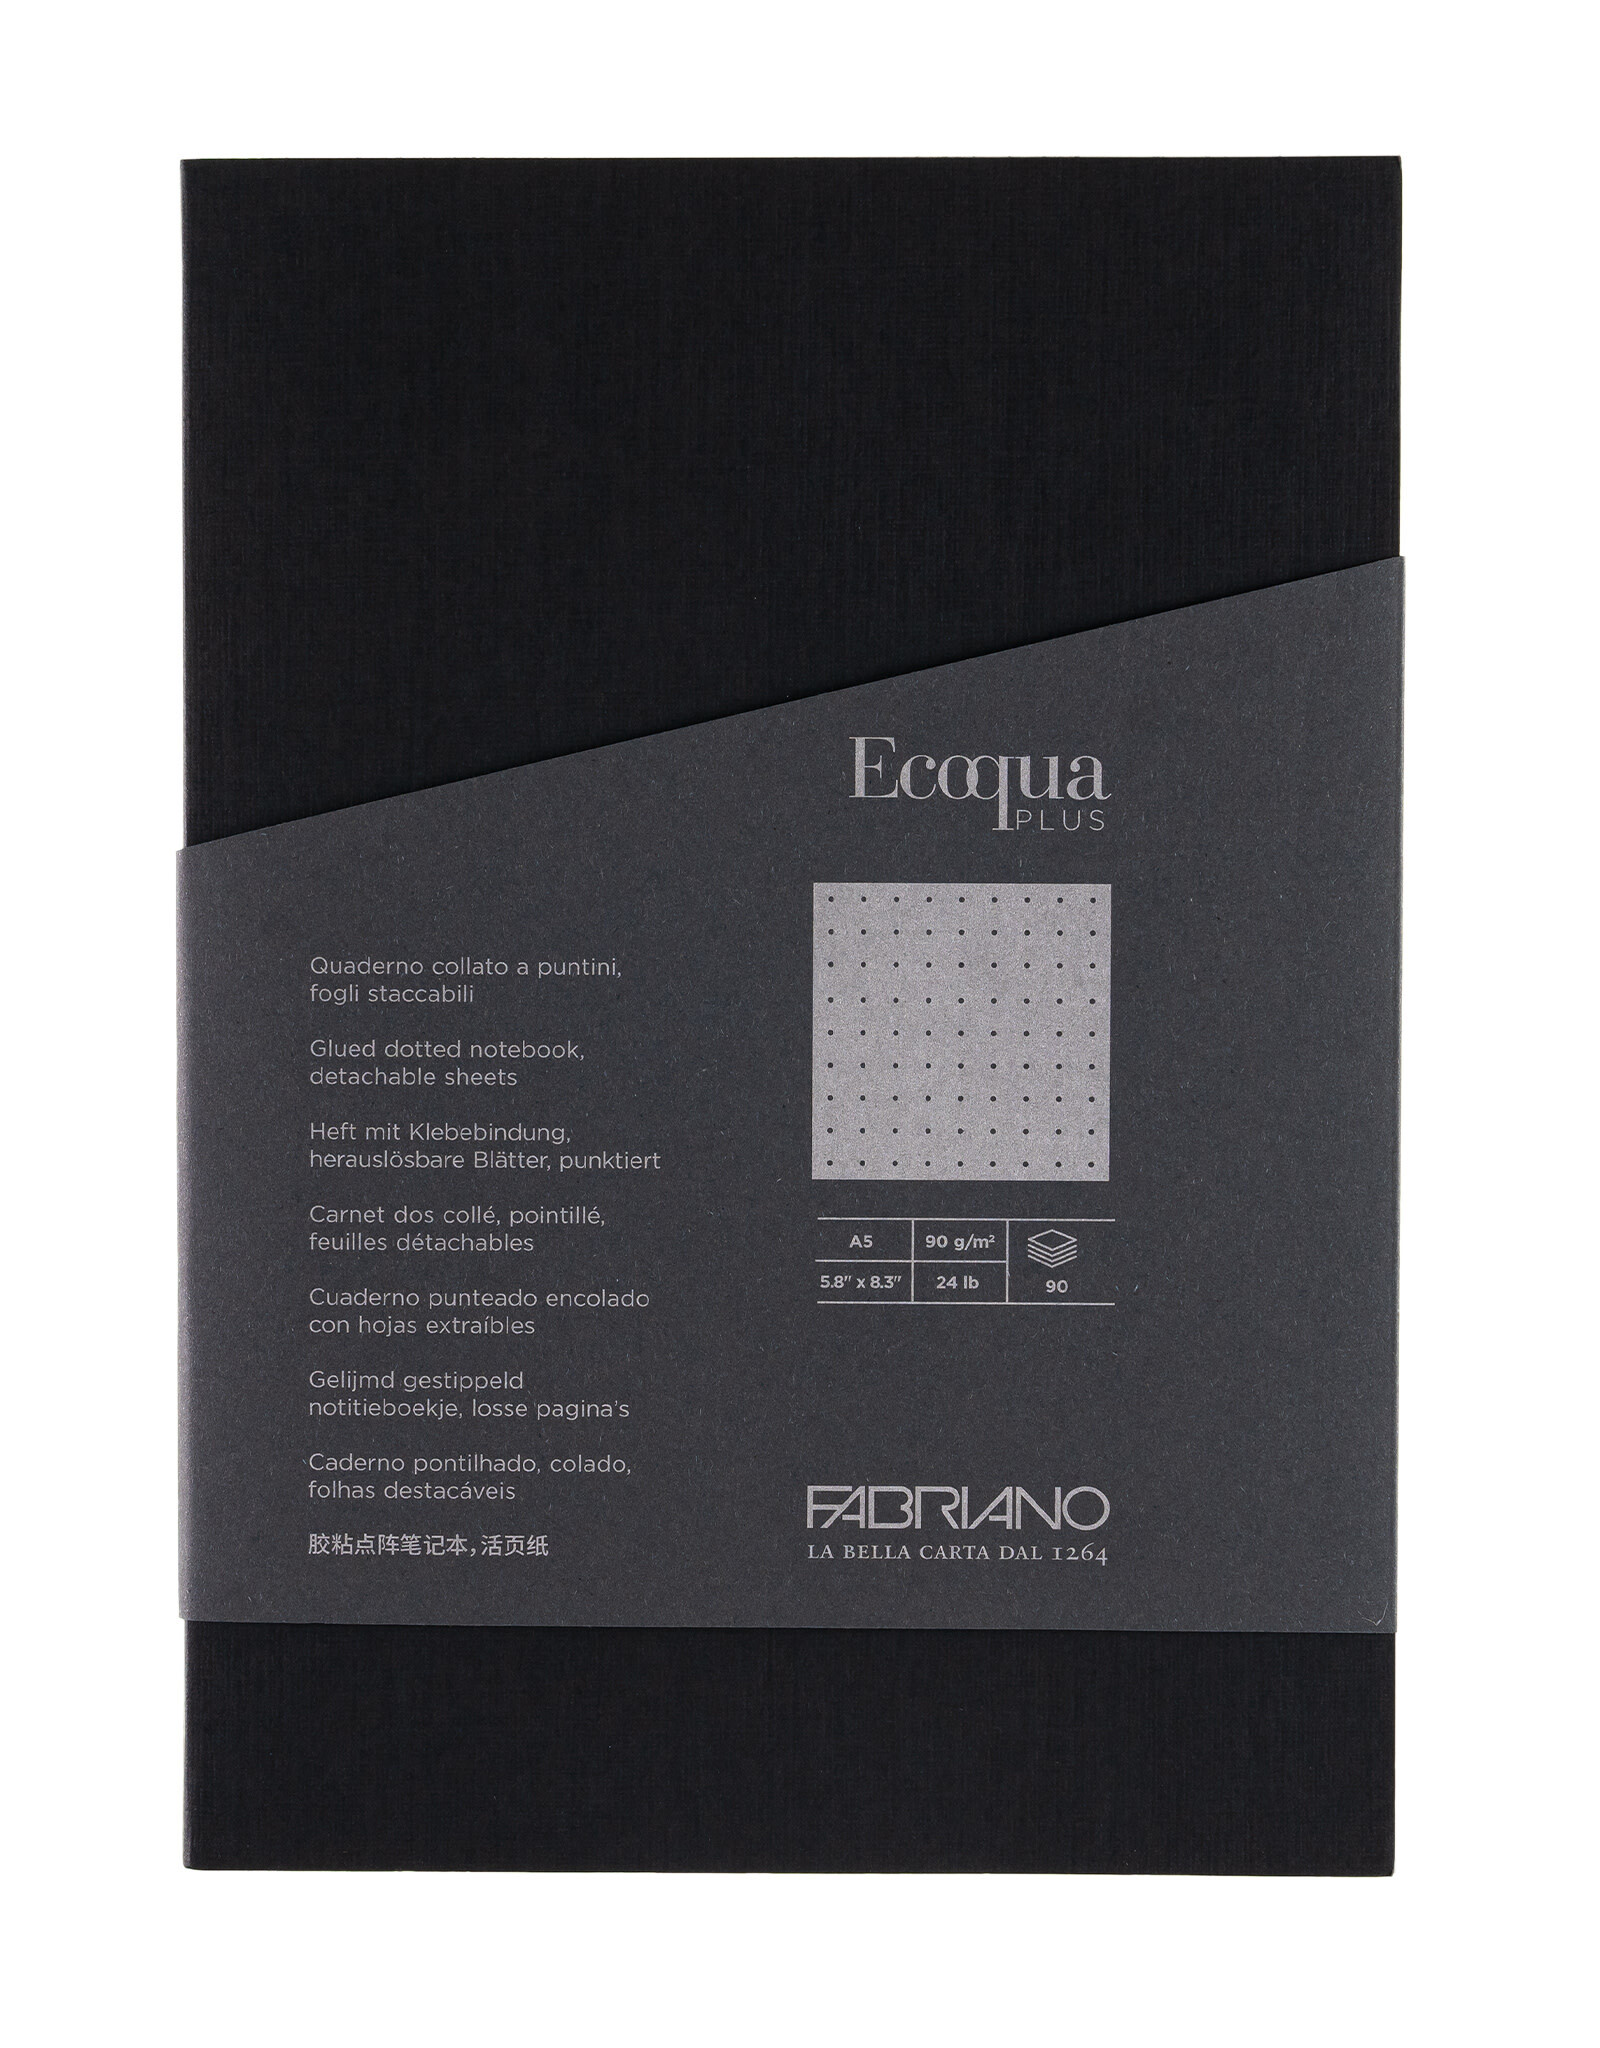 Ecoqua Plus Glue Bound Notebook, Black, A5, Dotted